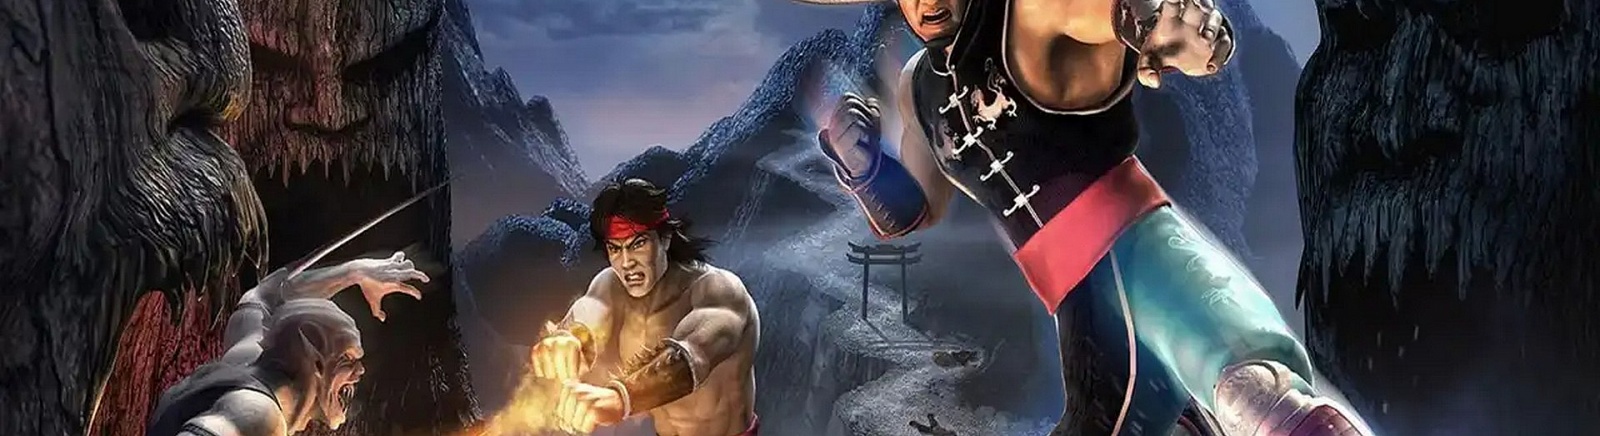 Дата выхода Mortal Kombat: Shaolin Monks  на PS2 и Xbox в России и во всем мире